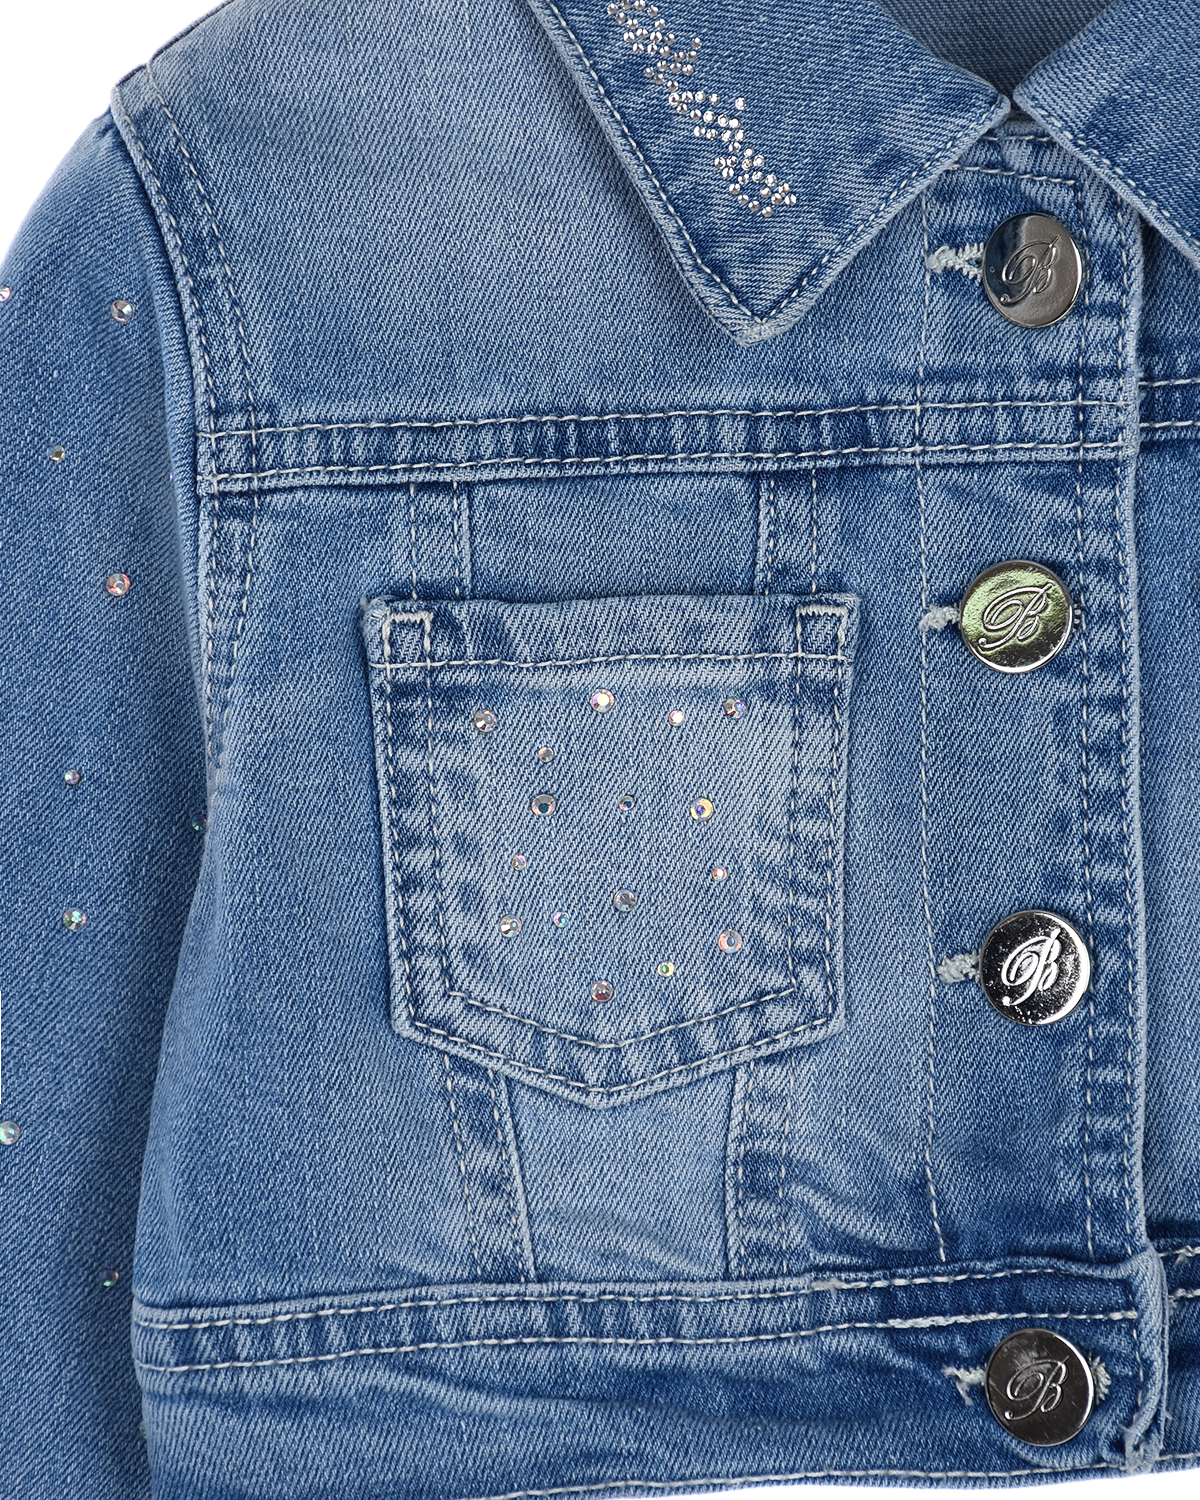 Укороченная джинсовая куртка с бусинами Miss Blumarine детская, размер 92, цвет синий - фото 3